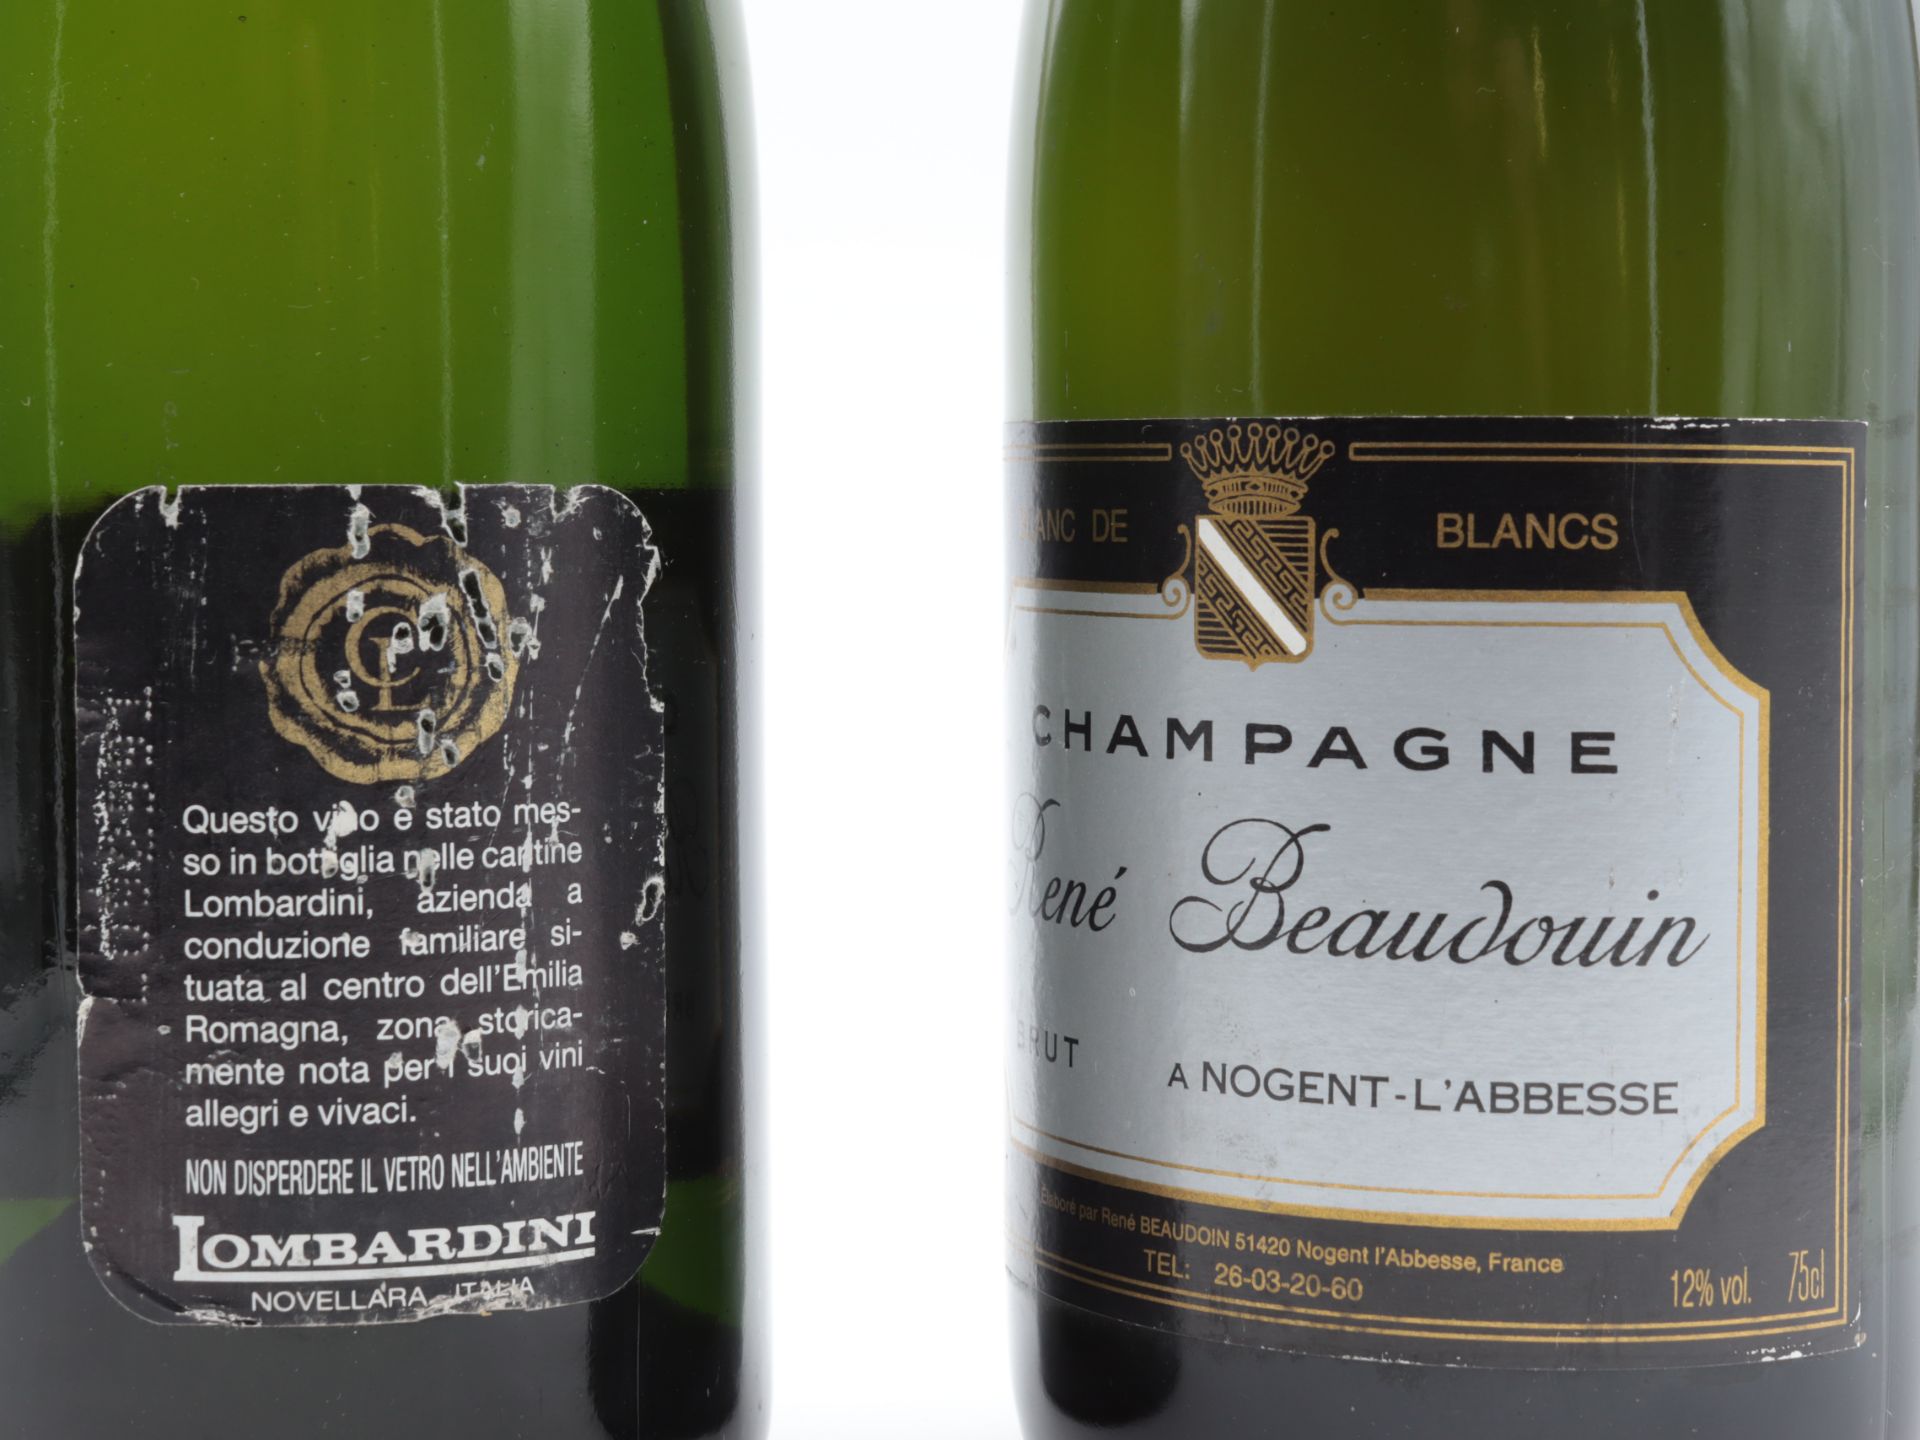 Champagner 1 Fl., René Beaudouin a Nogent-L´Abbesse, Brut, Blanc de blancs, 12 %, niedriger - Bild 4 aus 4